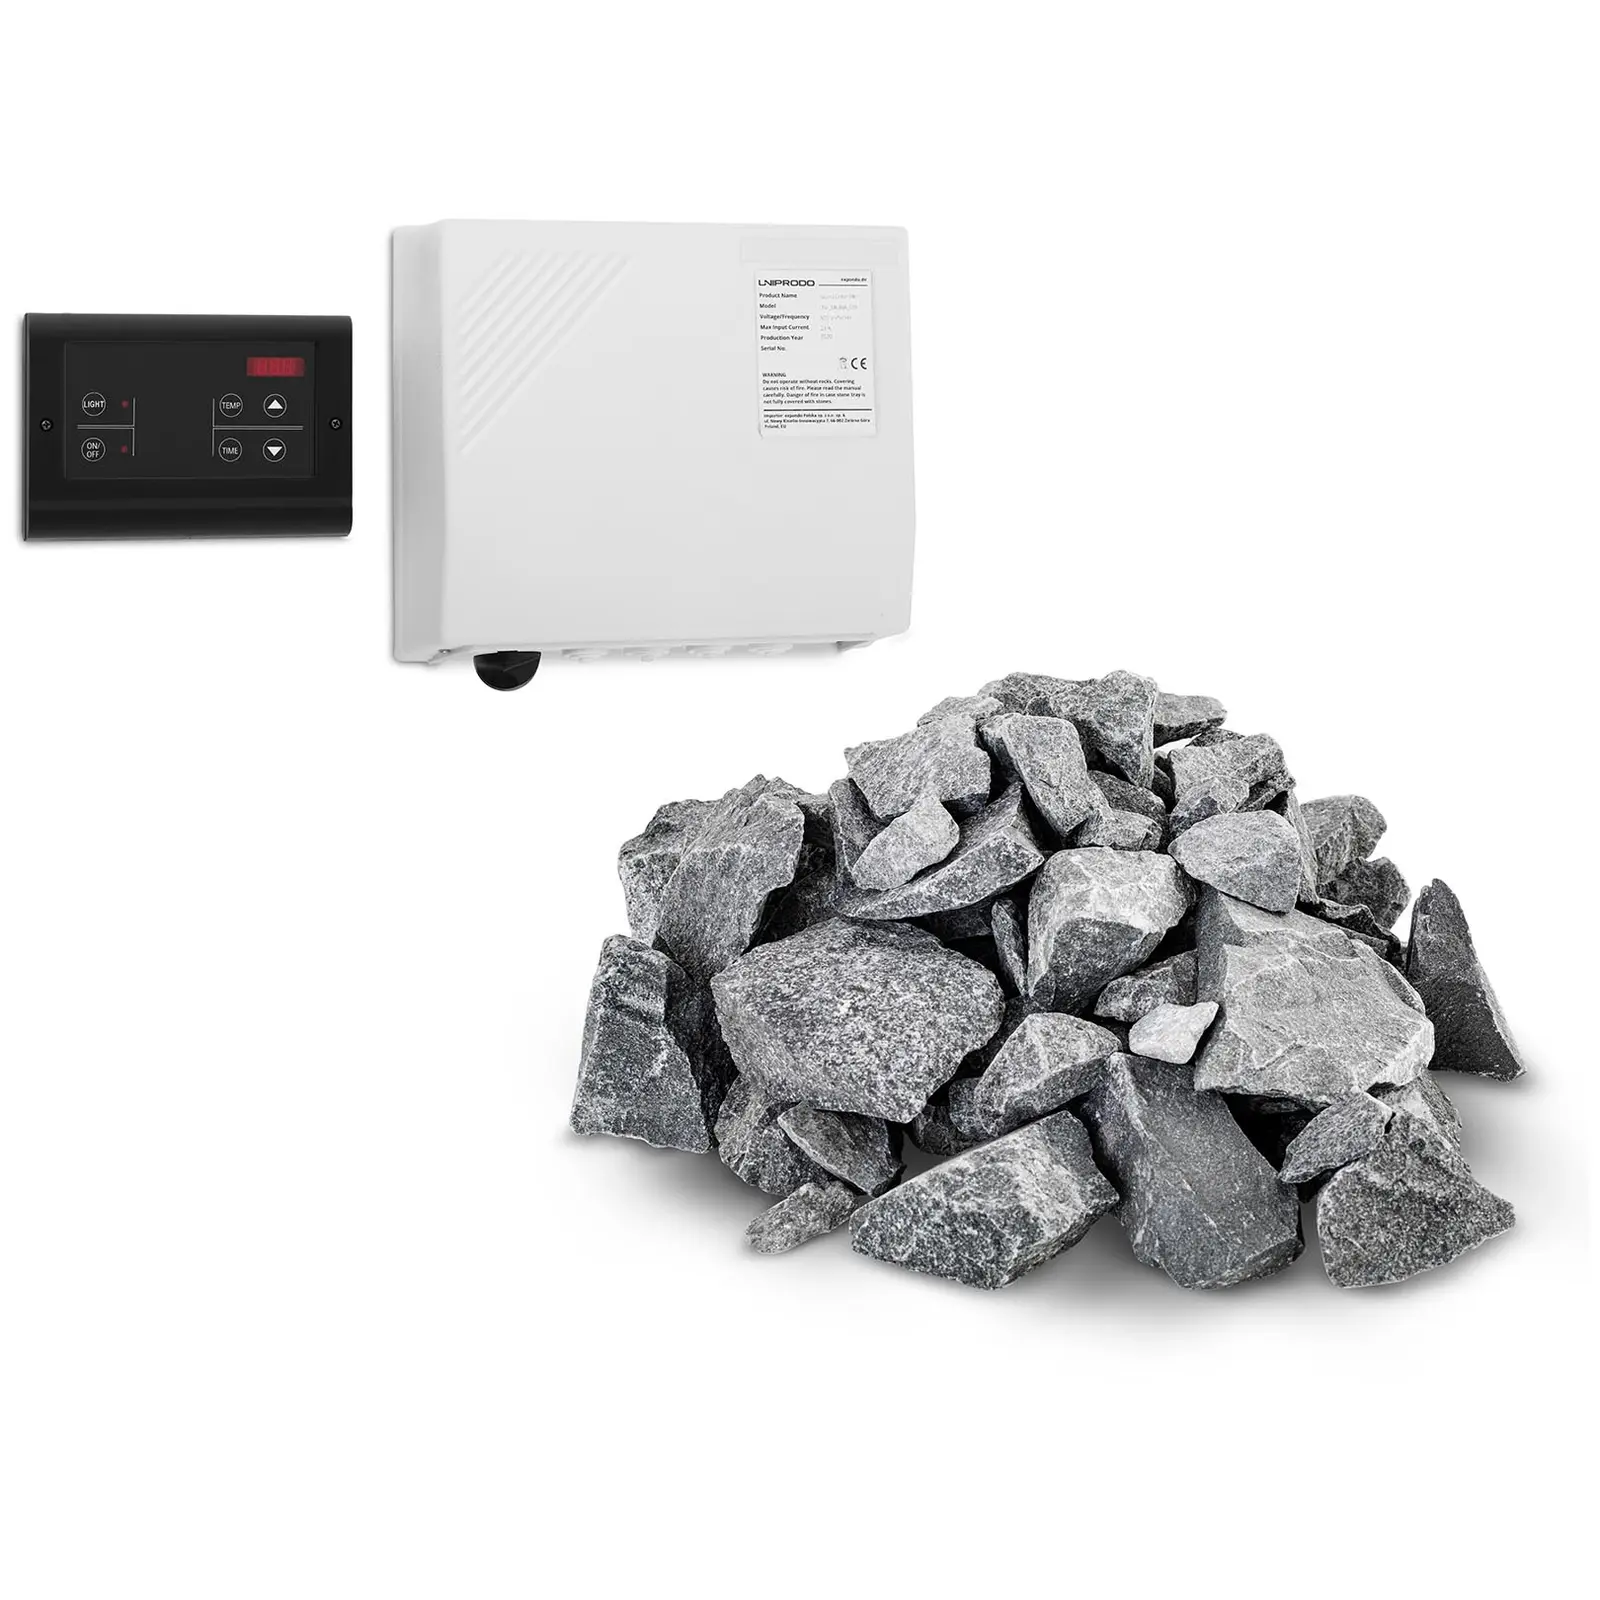 Set de panel de control para sauna y piedras - pantalla LED - 20 kg - para hornos de sauna de Uniprodo